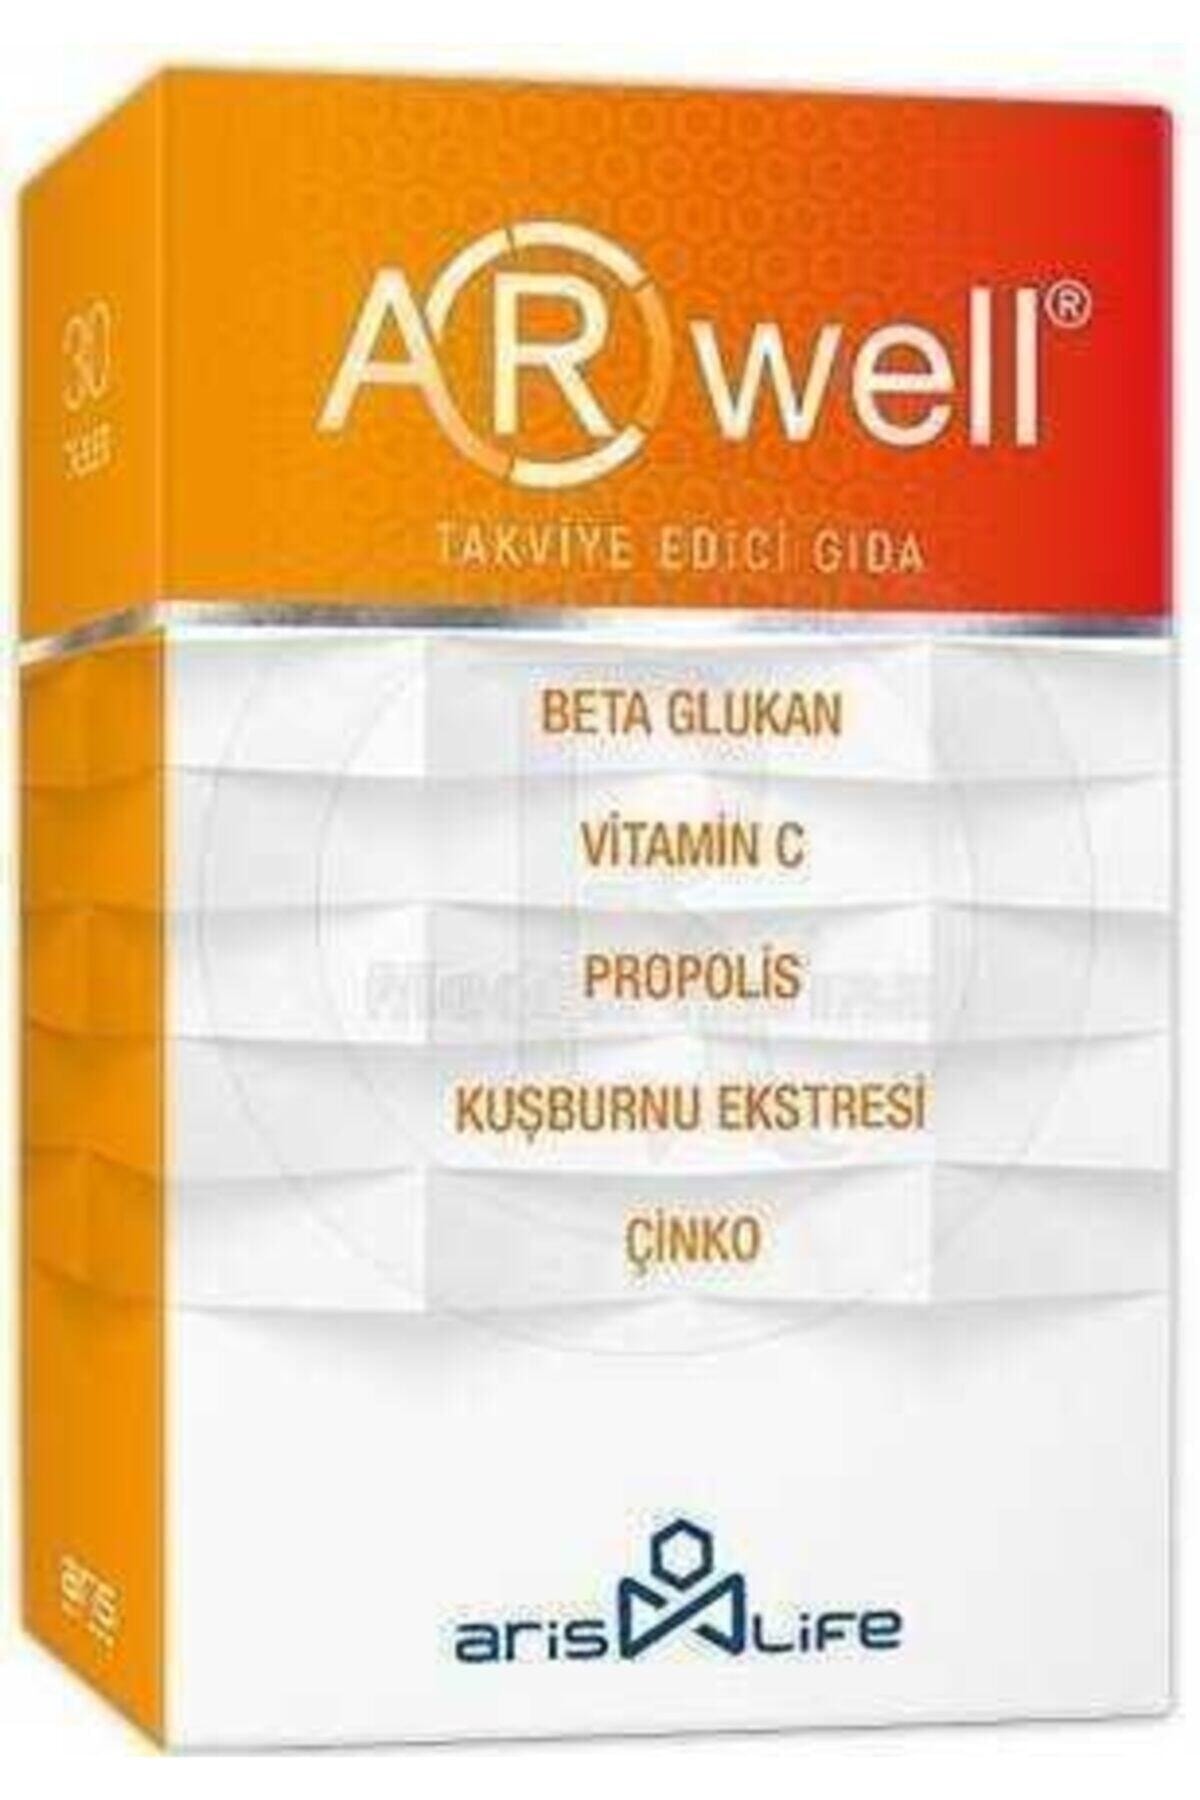 Arwell Arwel Arwel 30 Tablet